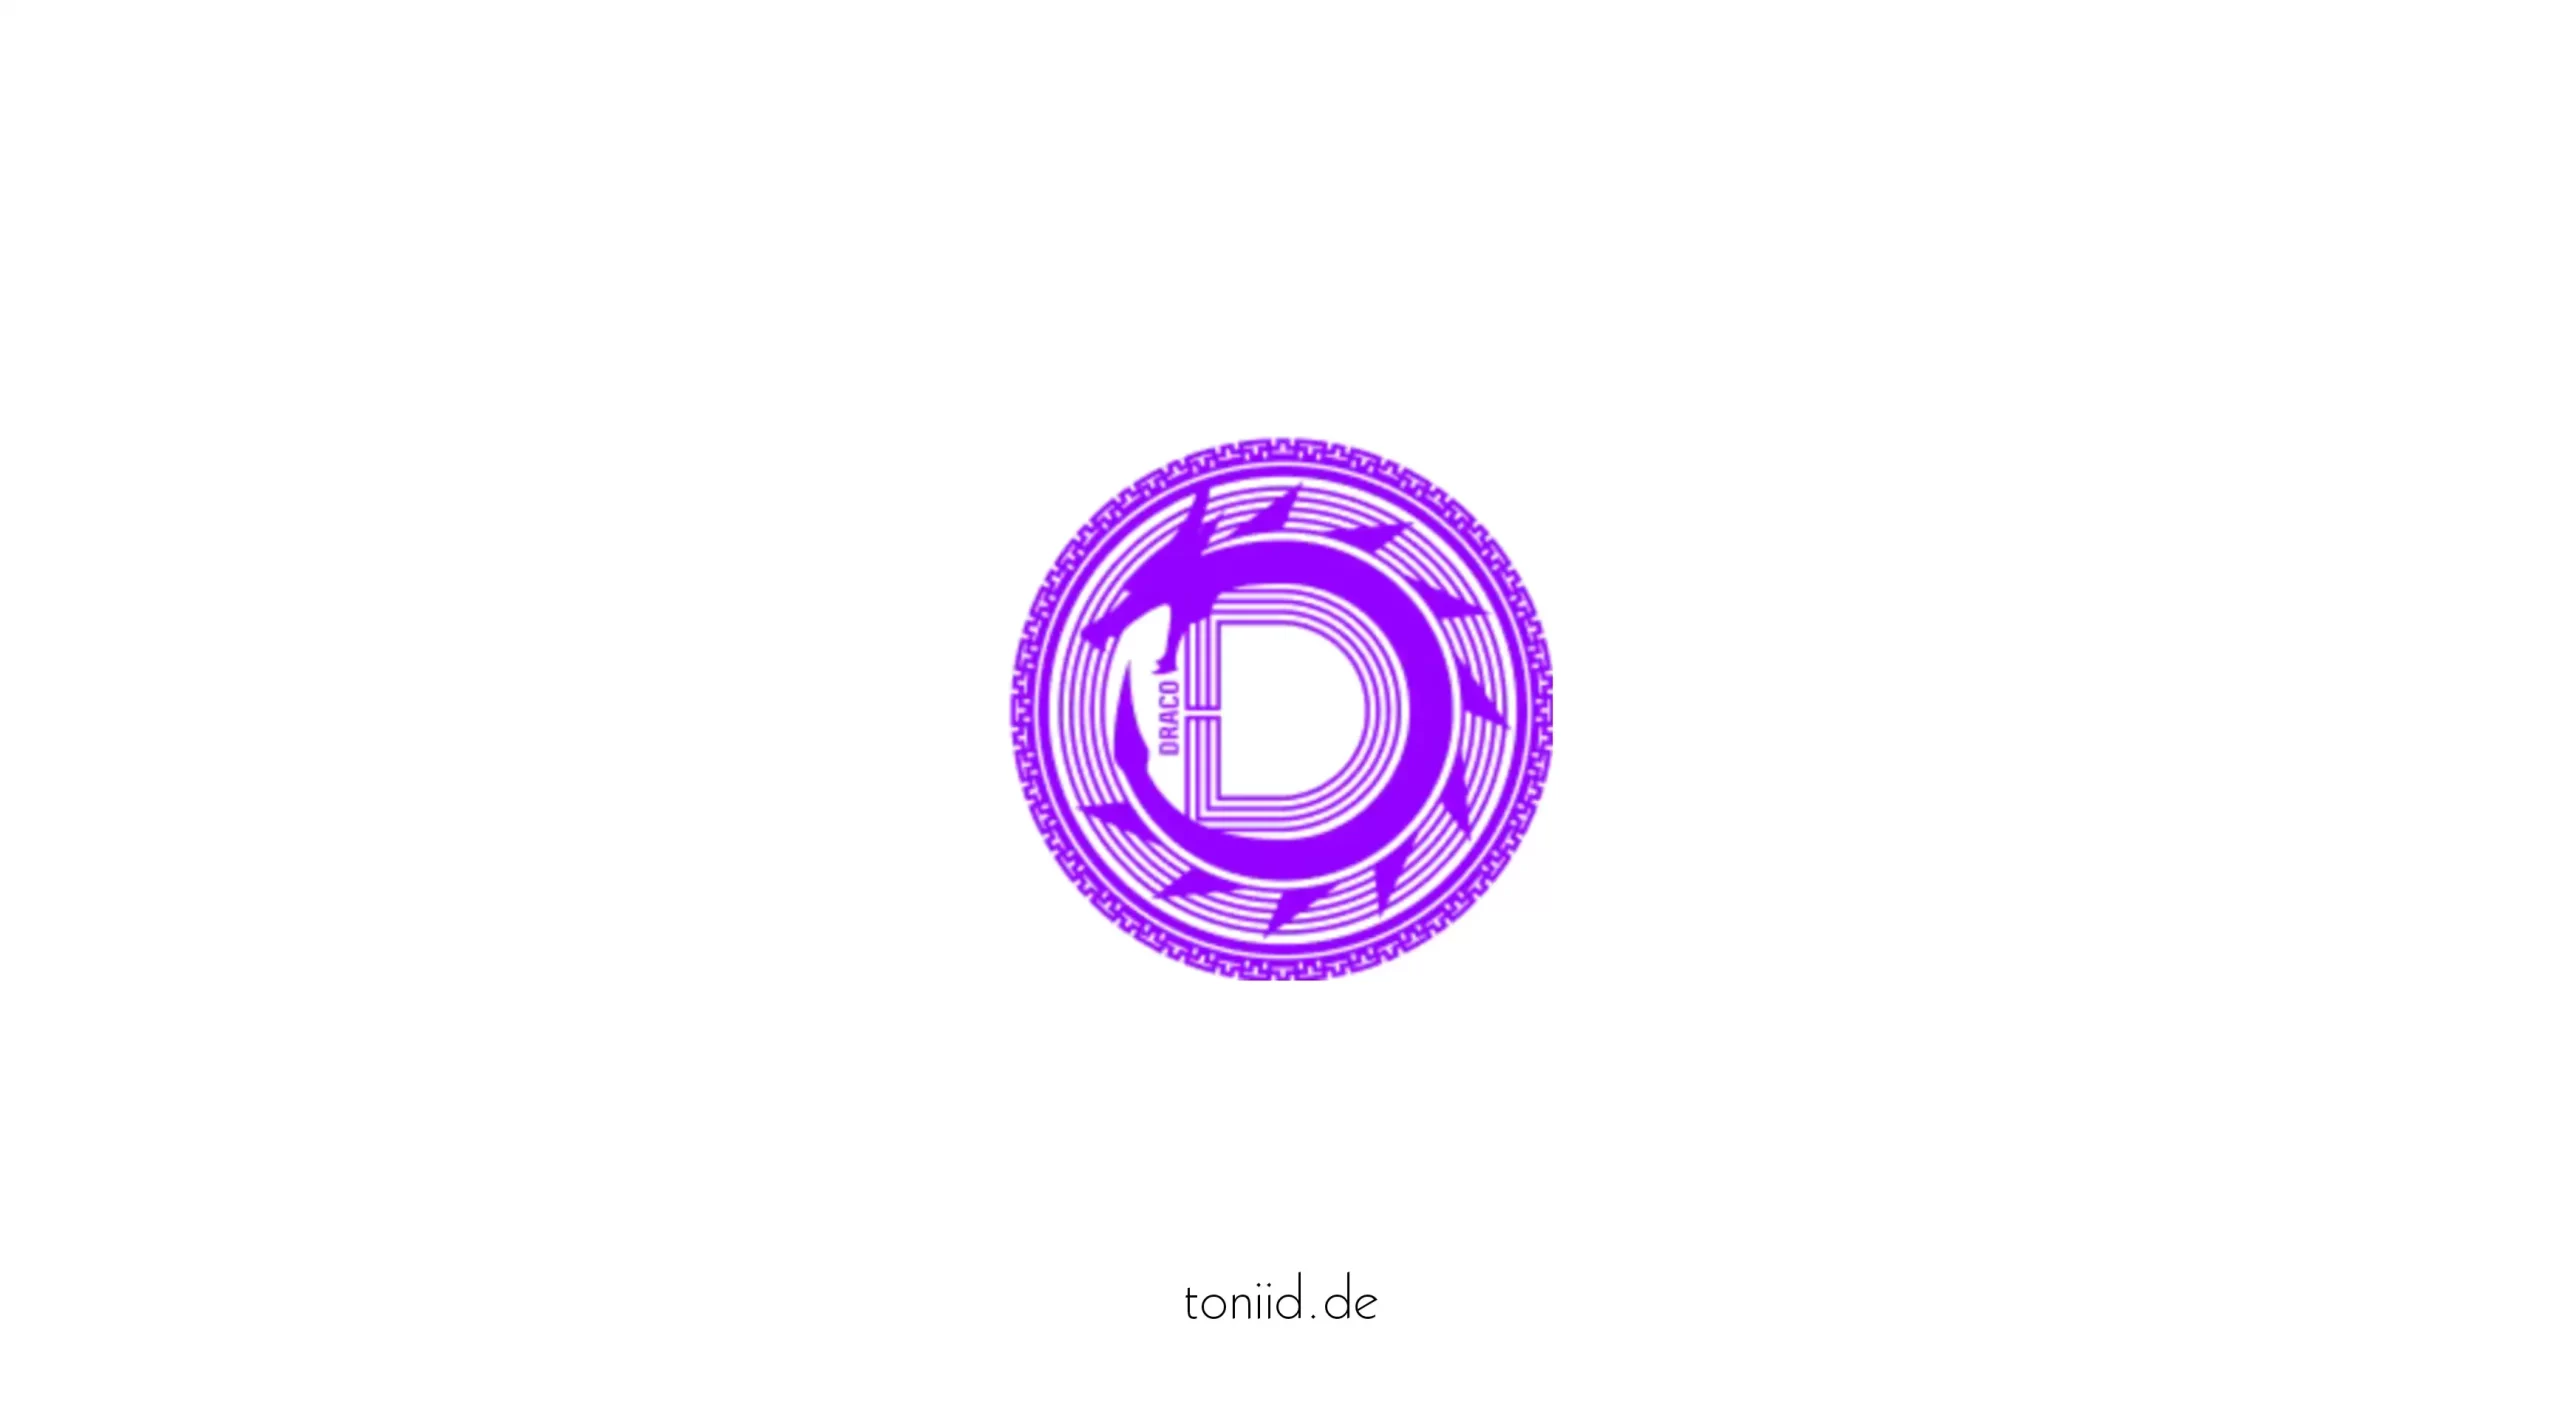 draco coin logo